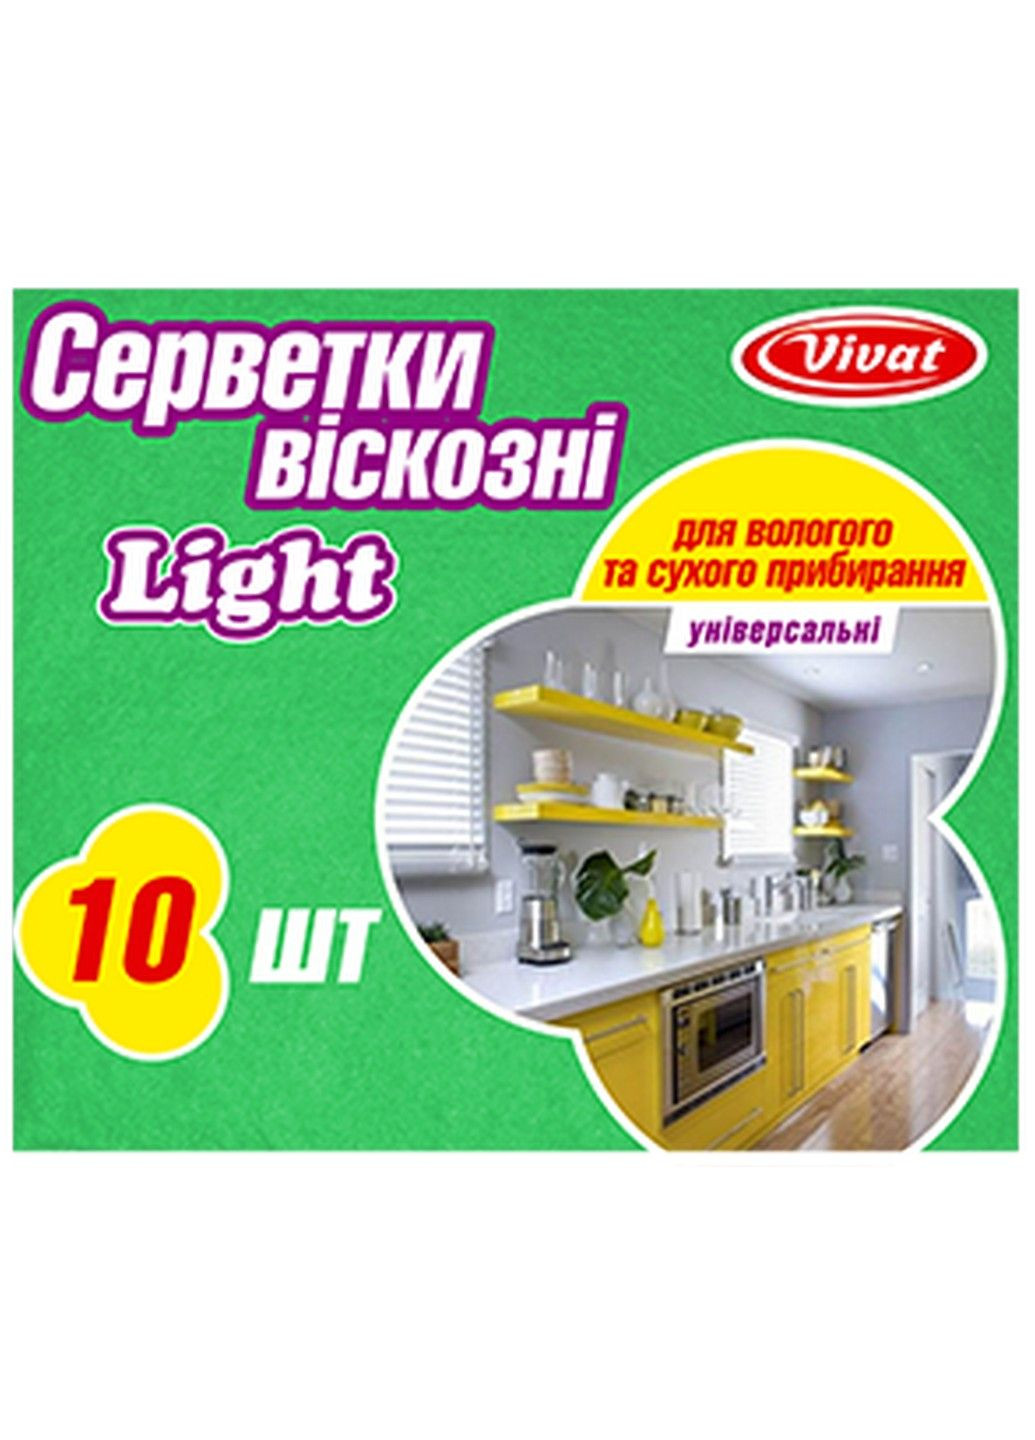 Серветка віскозна 10 шт Light Vivat (285120313)